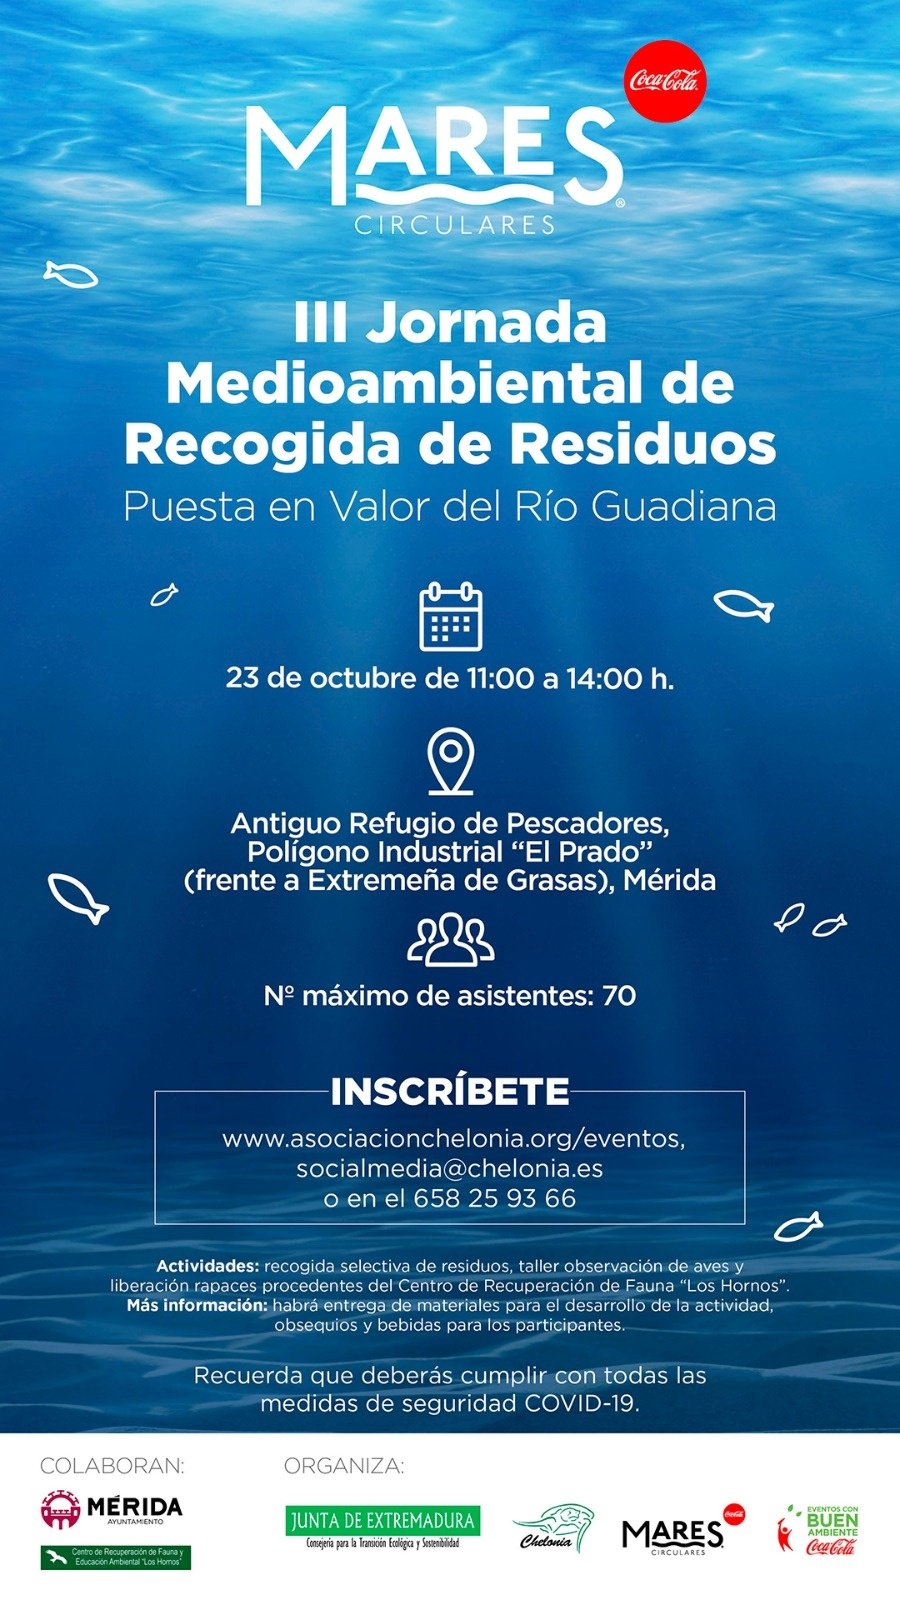 III Jornada Medioambiental de Recogida de Residuos y Puesta en Valor del Río Guadiana